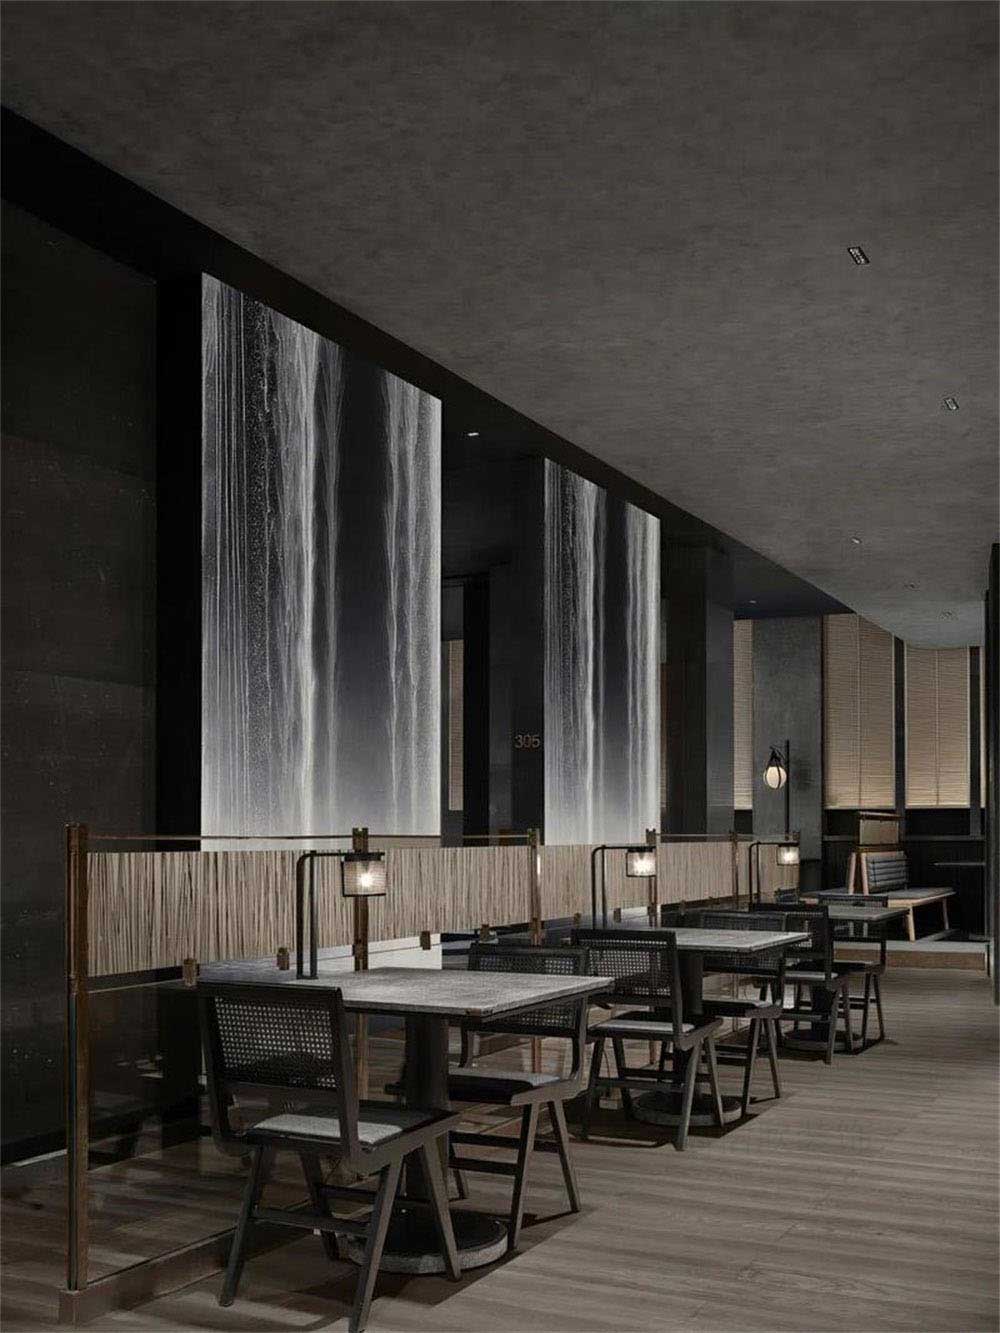 简约风格日本料理铁板烧餐厅装修设计散座区